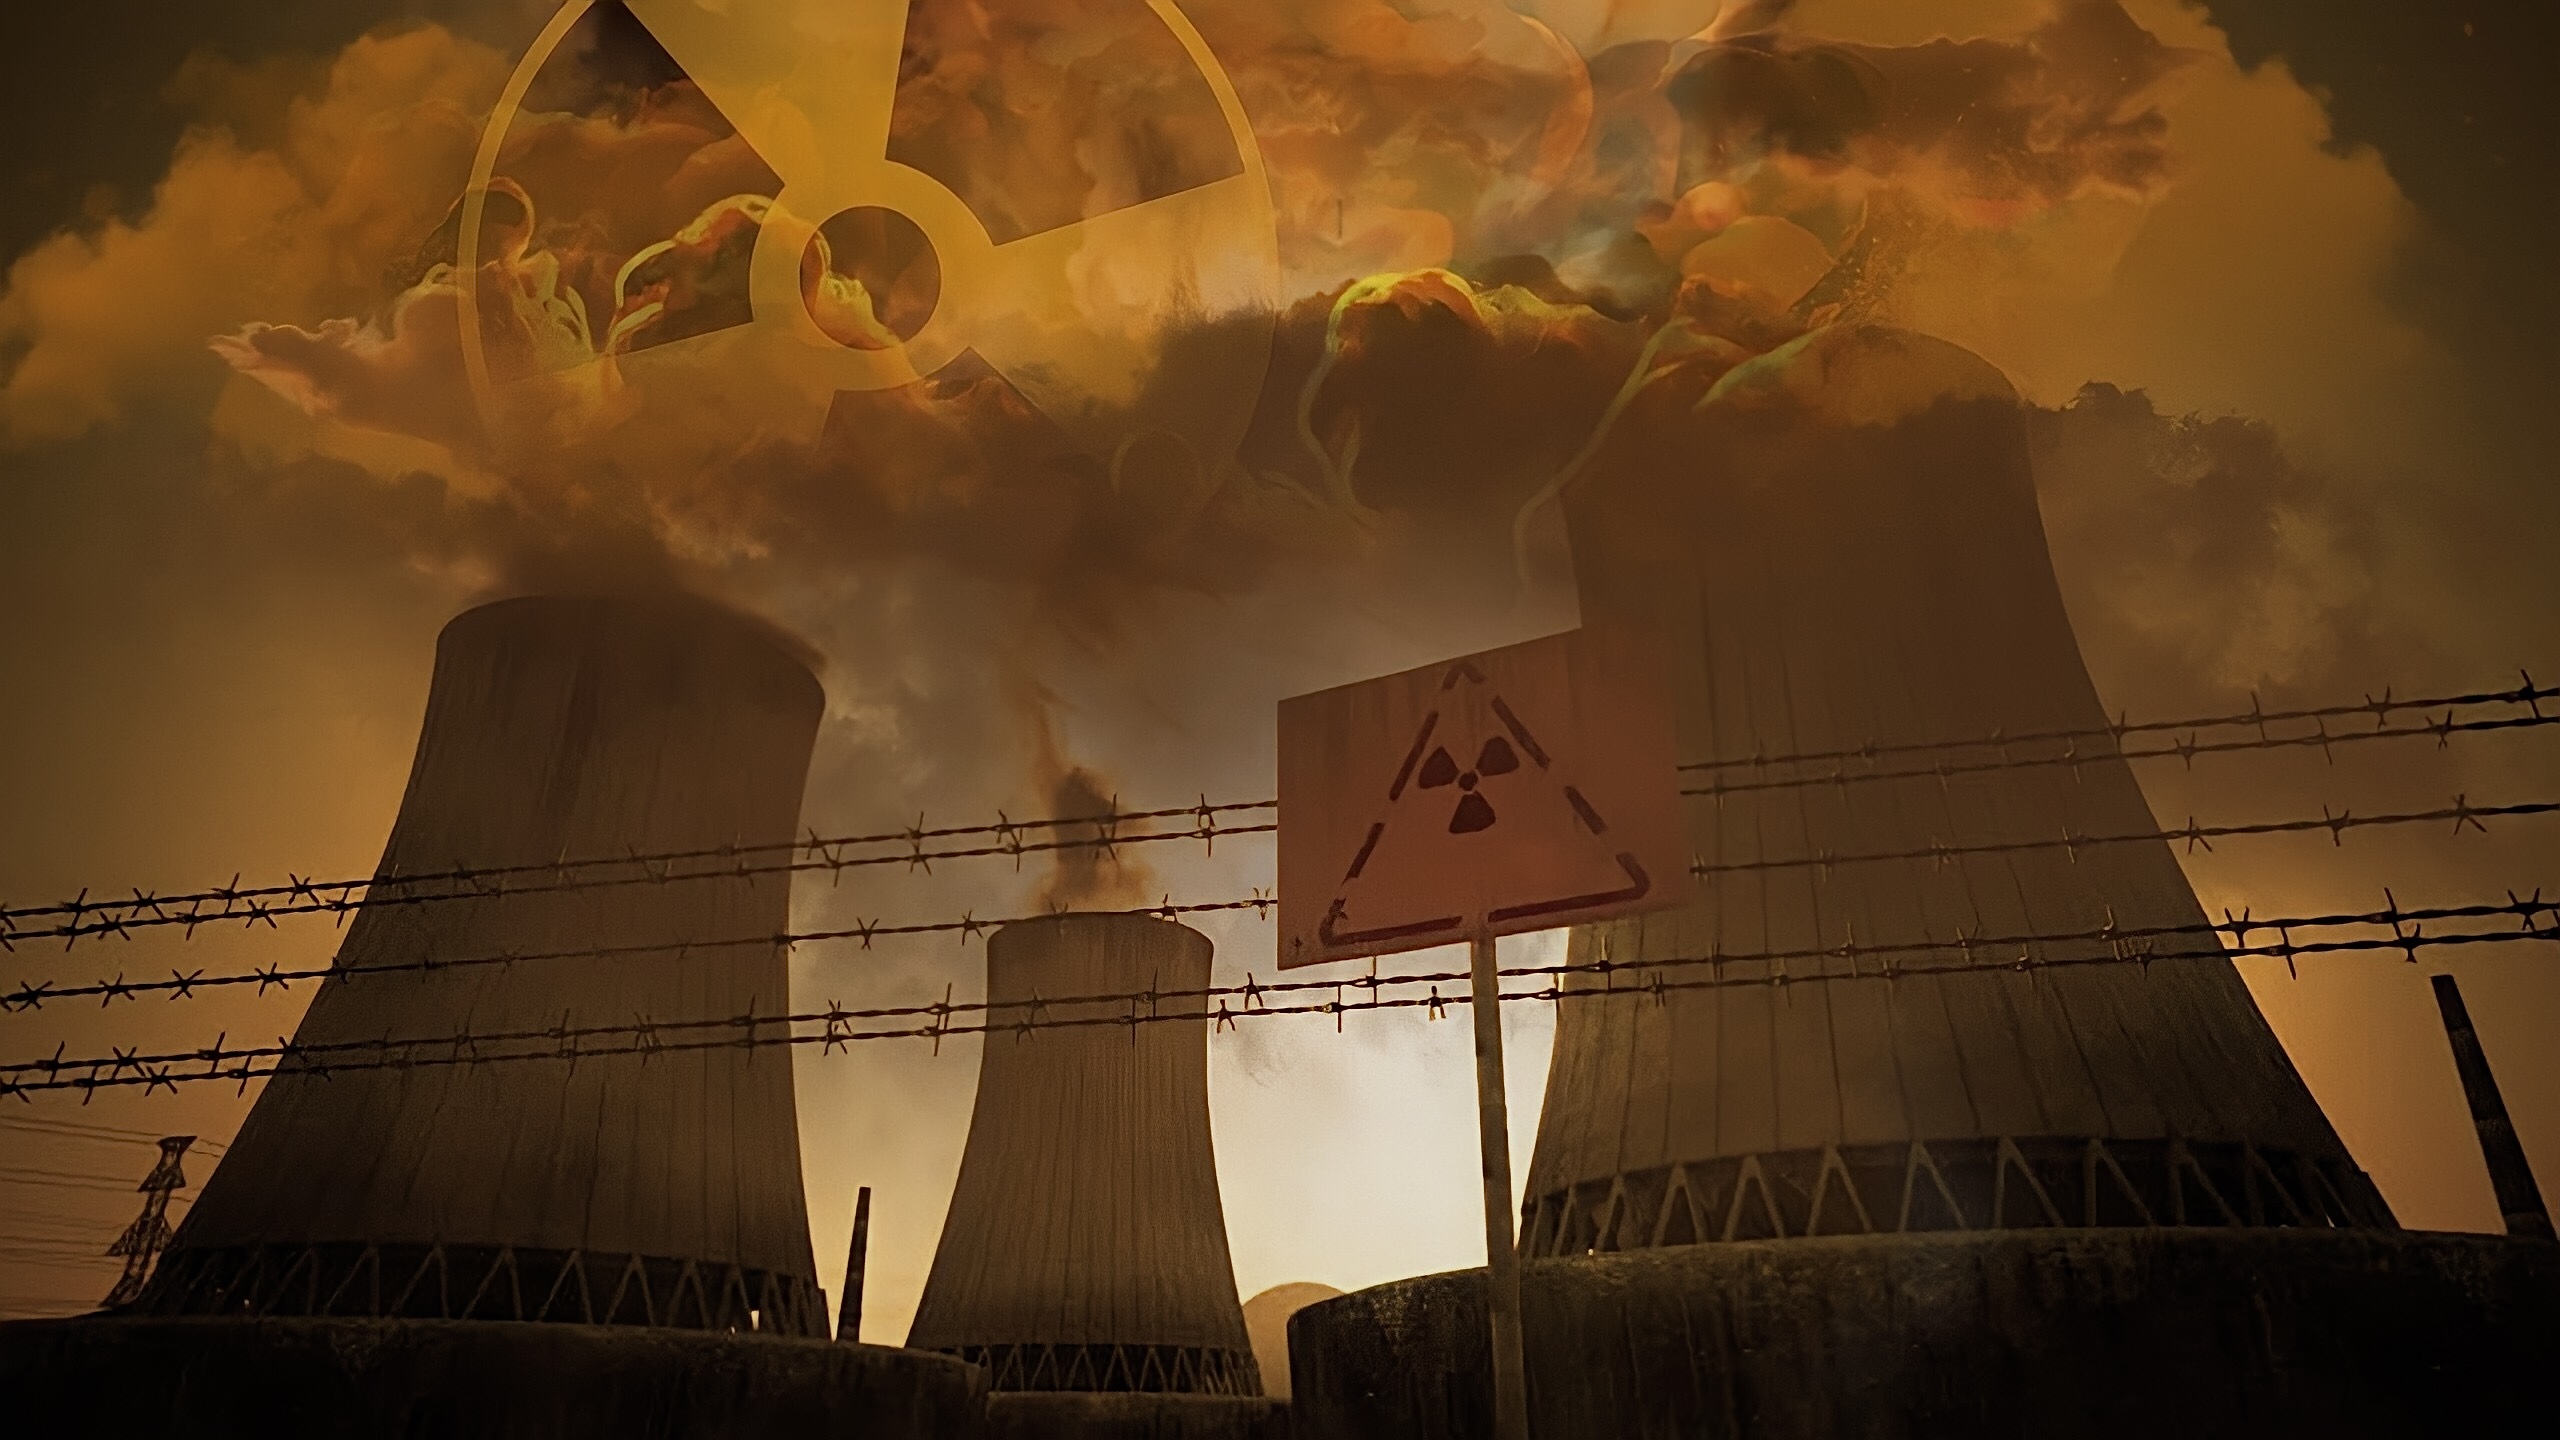 Газ ядерная энергия. Запорожская атомная электростанция зона радиации. Чернобыльская катастрофа радиоактивное загрязнение. АЭС Чернобыль загрязнение окружающей среды. АЭС Чернобыль радиация.